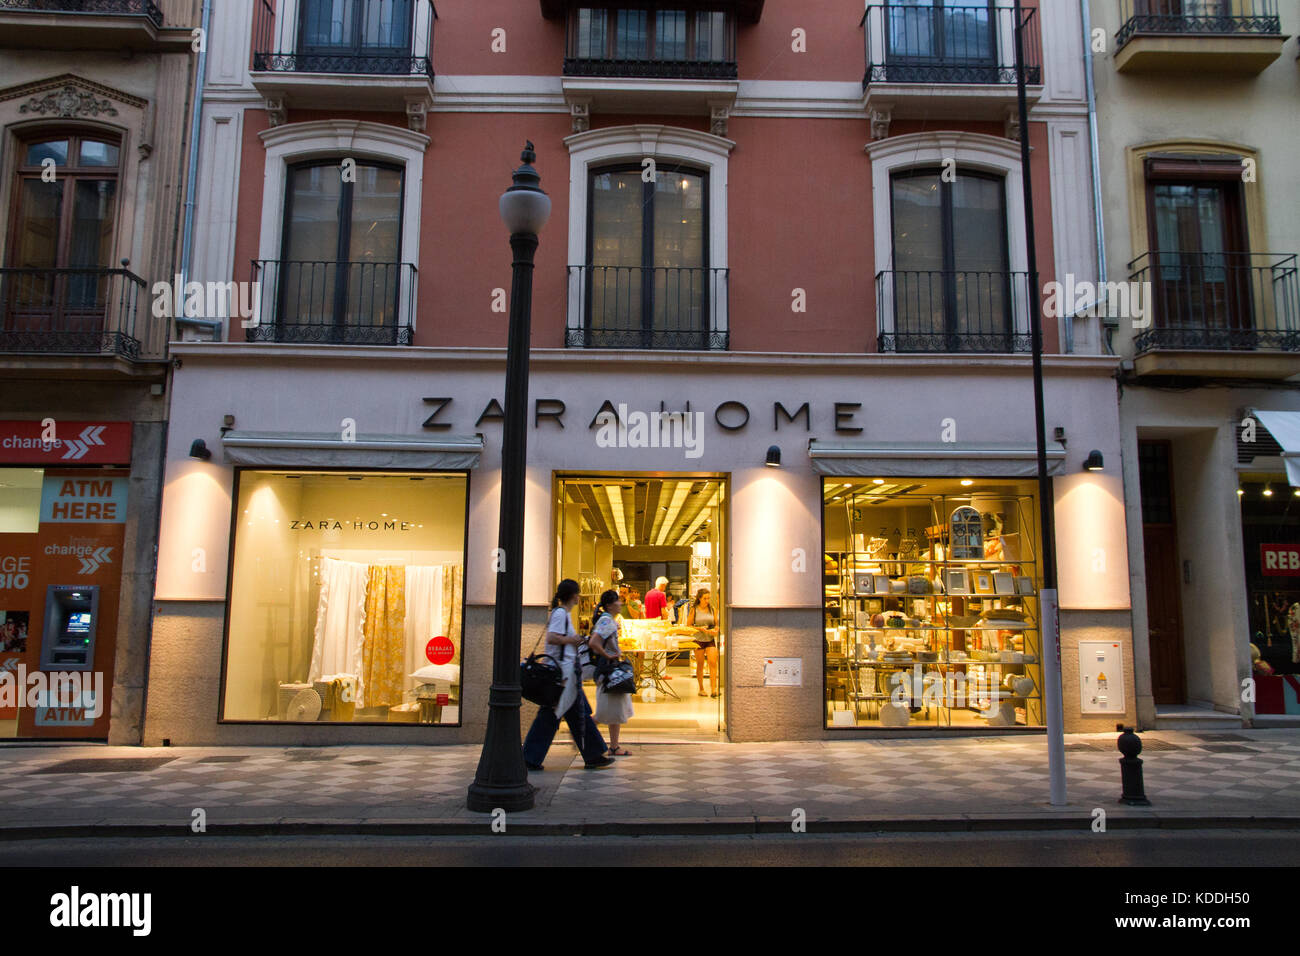 Zara Home Shop in Granada Andalusien Spanien Stockfotografie - Alamy